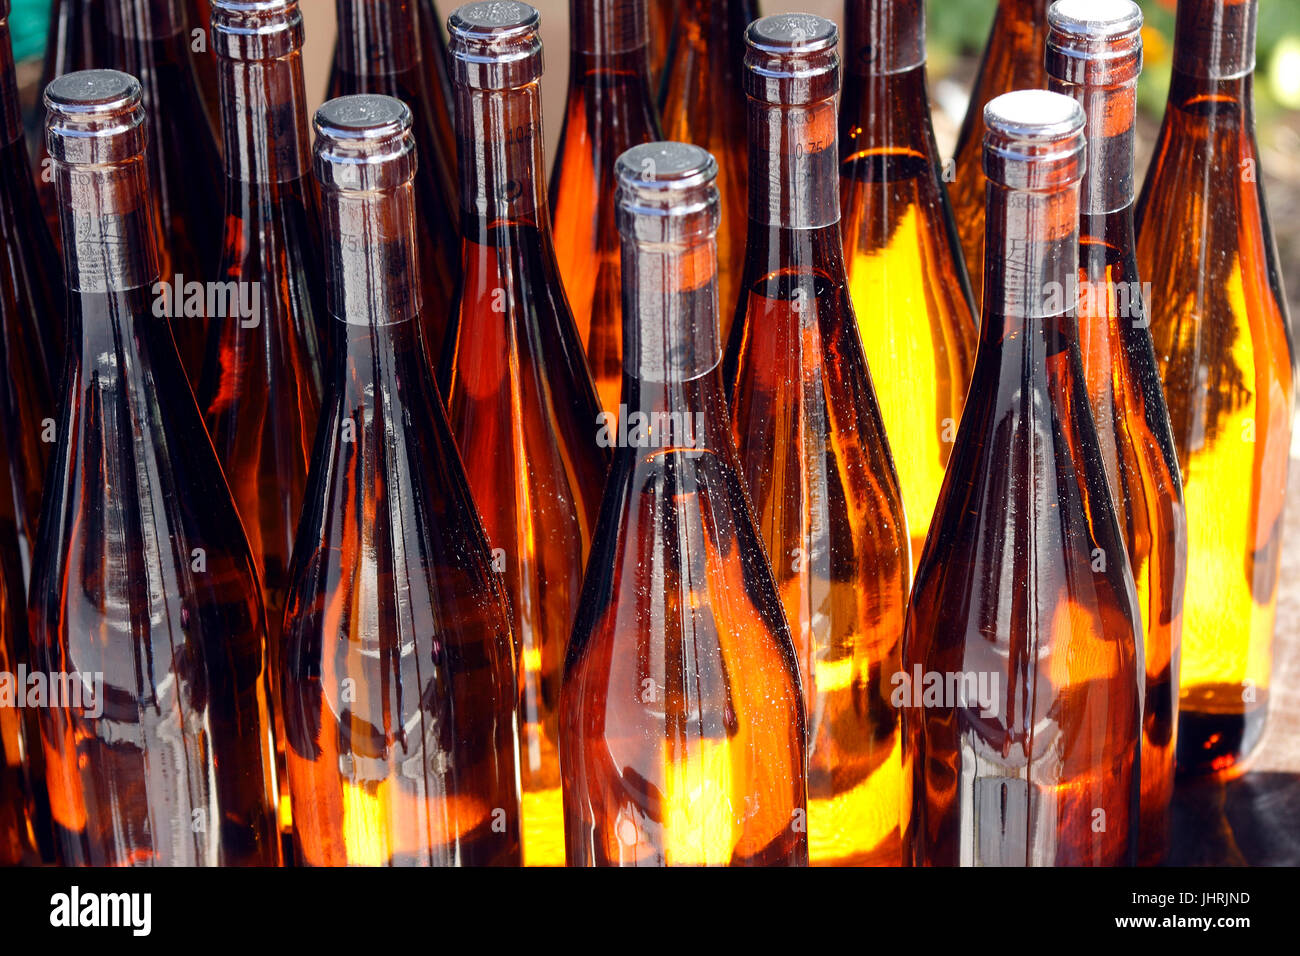 Les bouteilles de vin Vino Verde pour vente à la marché samedi près de Colares Sintra Portugal Banque D'Images